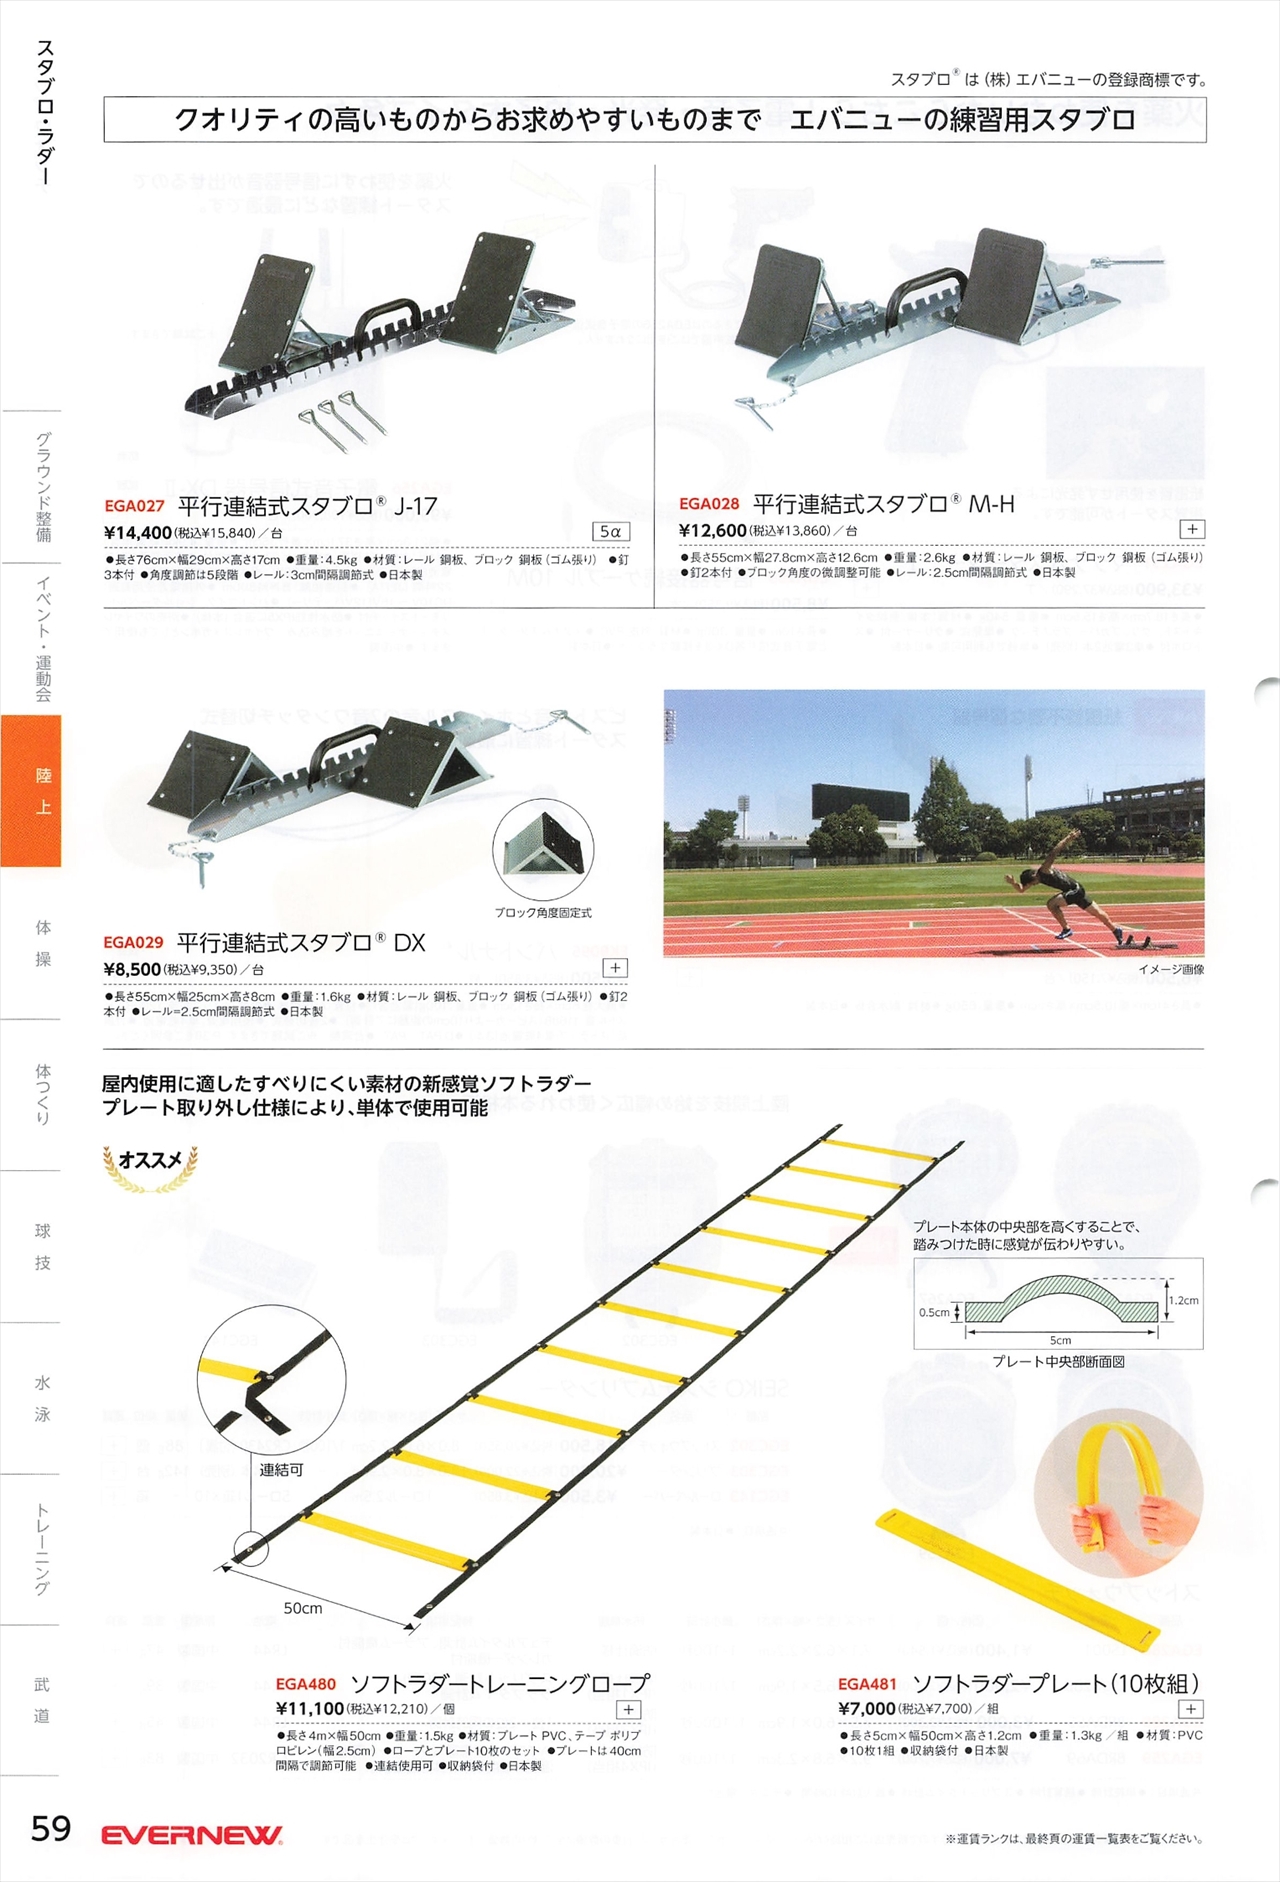 陸上競技用スタブロは、エバニュー2022カタログ の ページ59 に掲載 